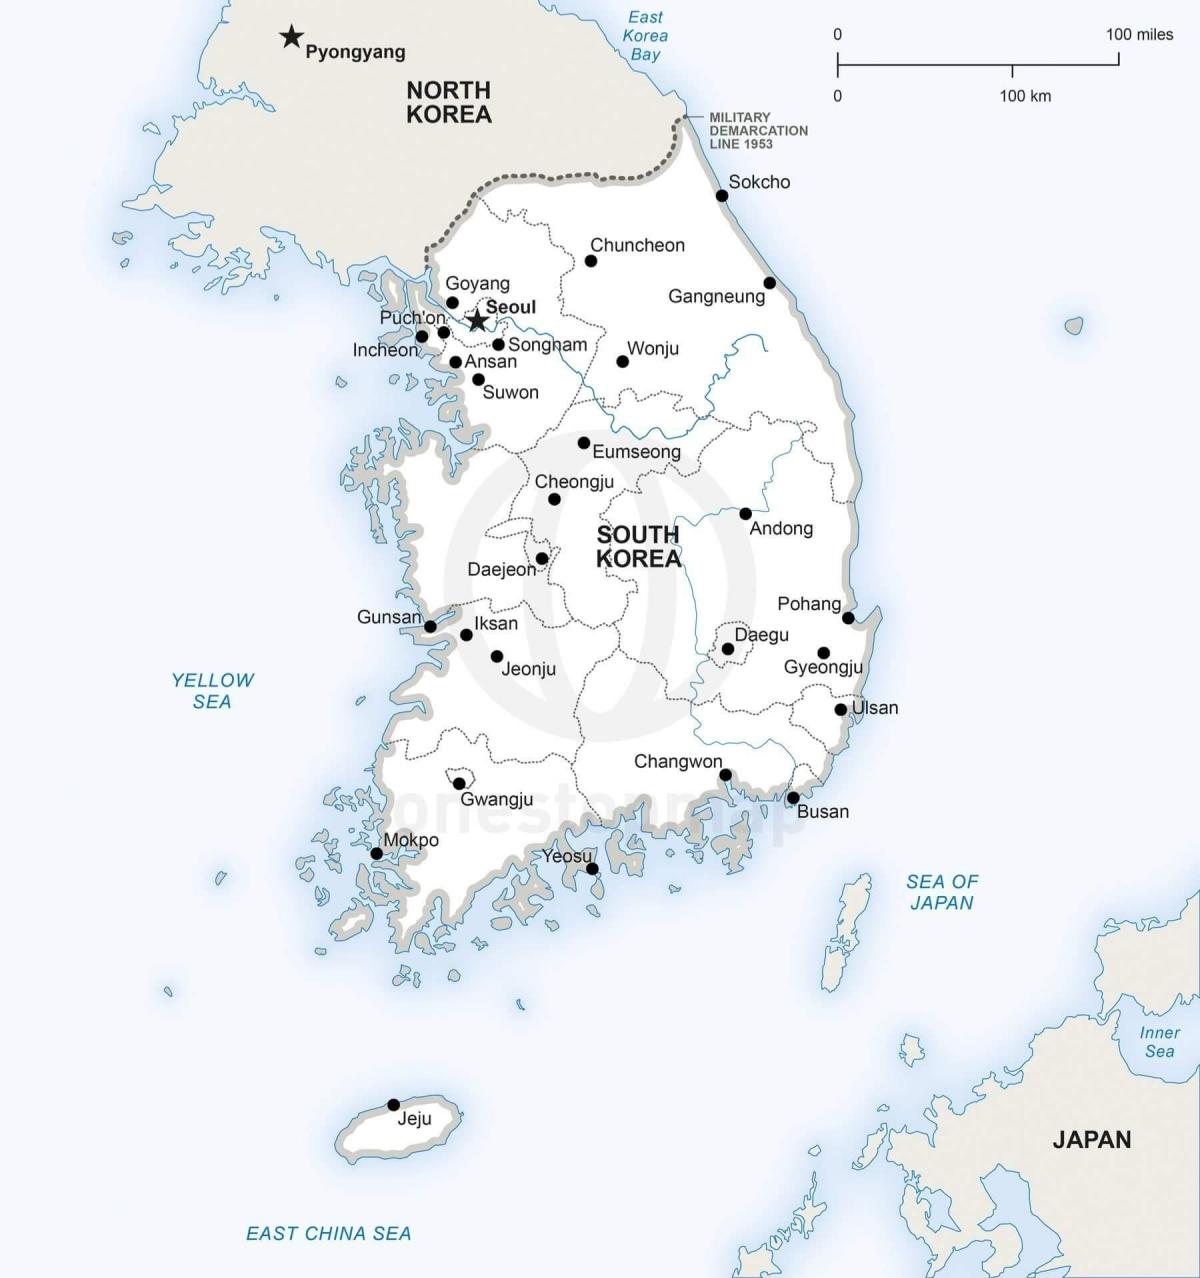 Mapa de Corea del Sur (ROK) con las principales ciudades